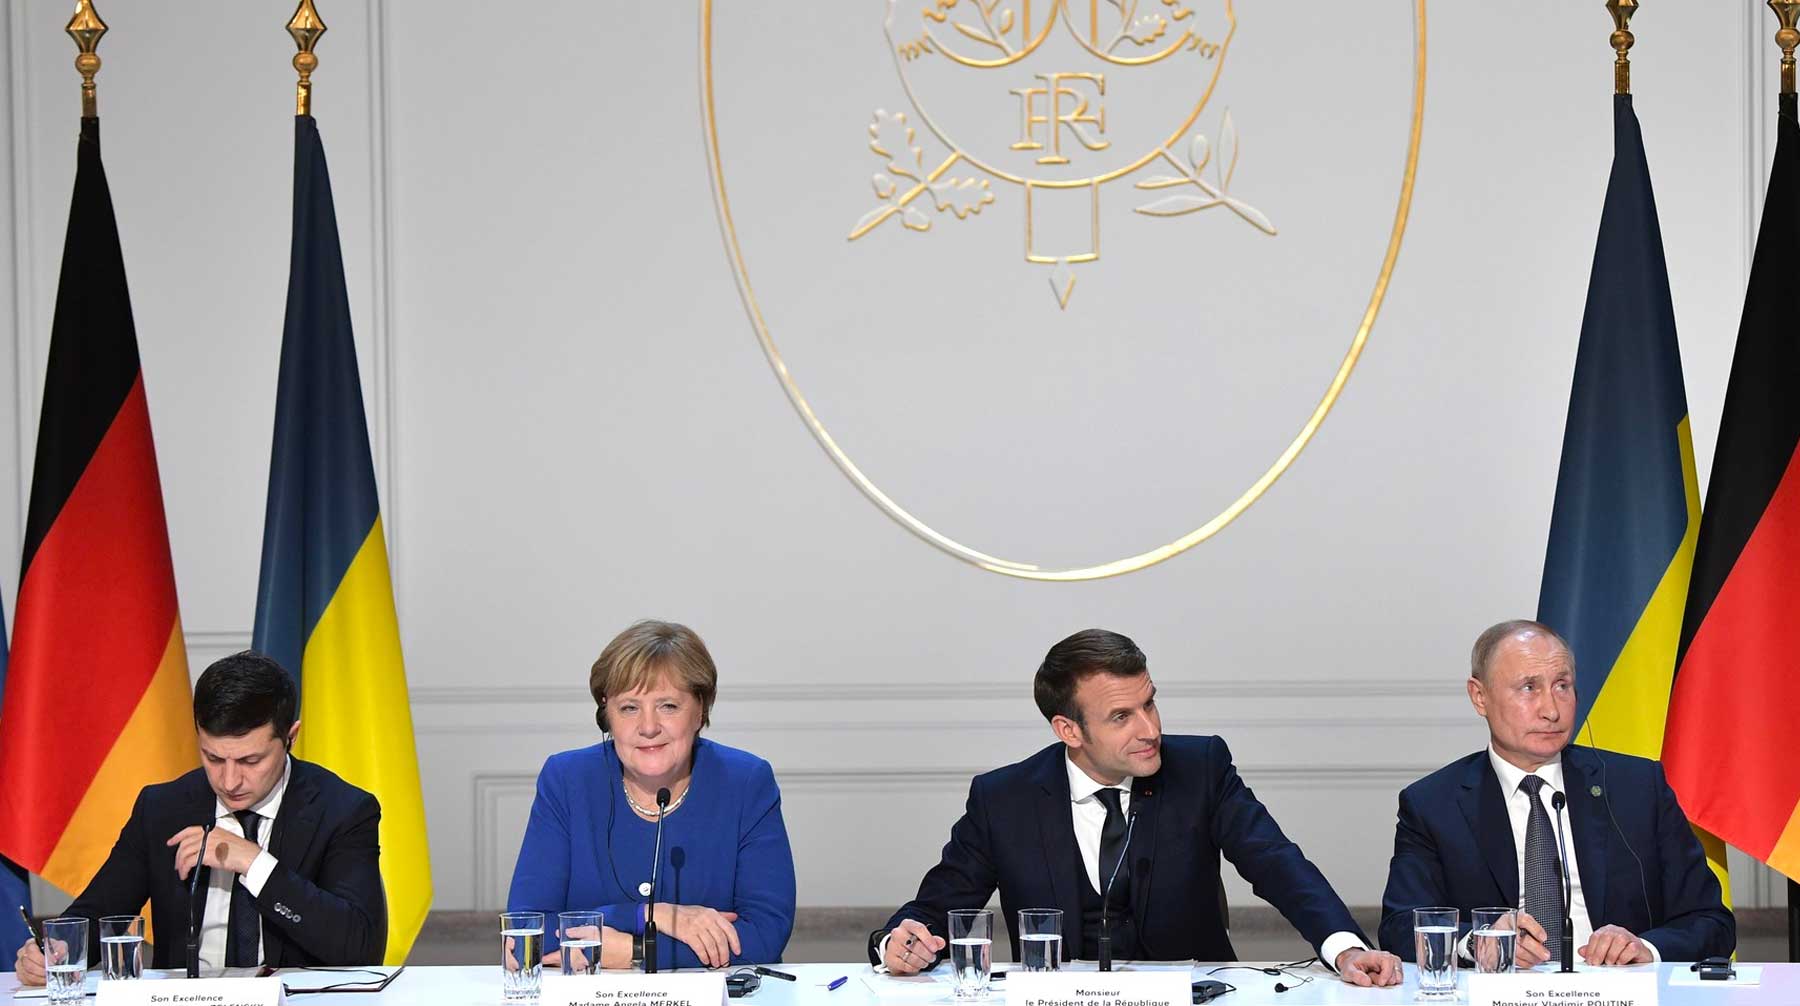 Позже президент Украины Владимир Зеленский заявил, что переговоры закончились «вничью» Фото: © GLOBAL LOOK press / Alexei Nikolsky